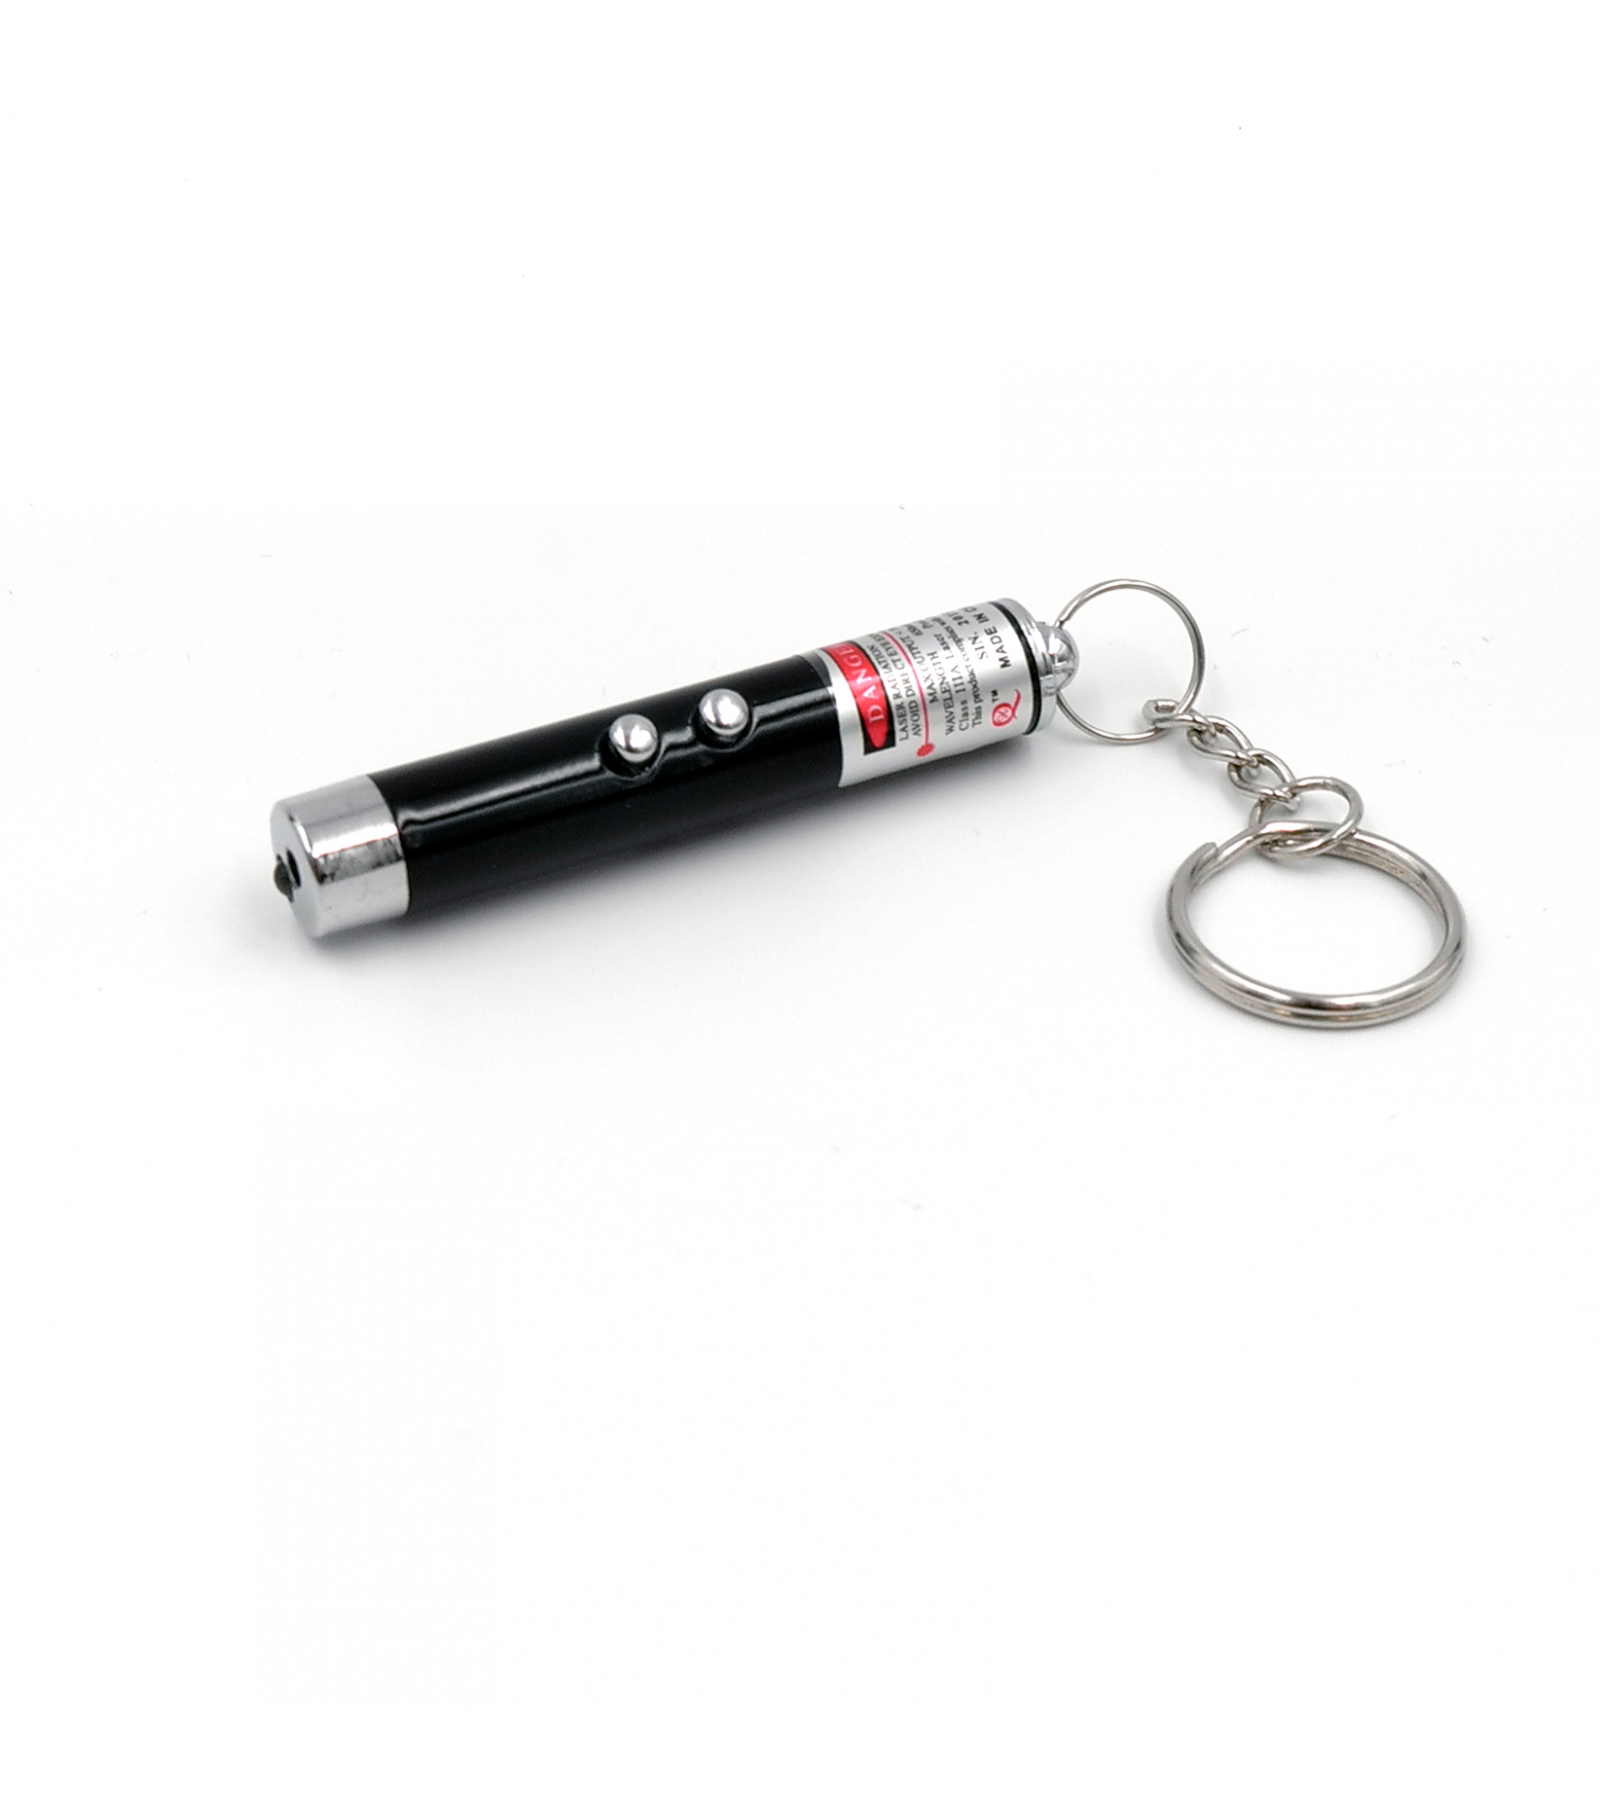 Laser pointeur 2 en 1 de poche 150m faisceaux rouge lumiere lazer porte cle